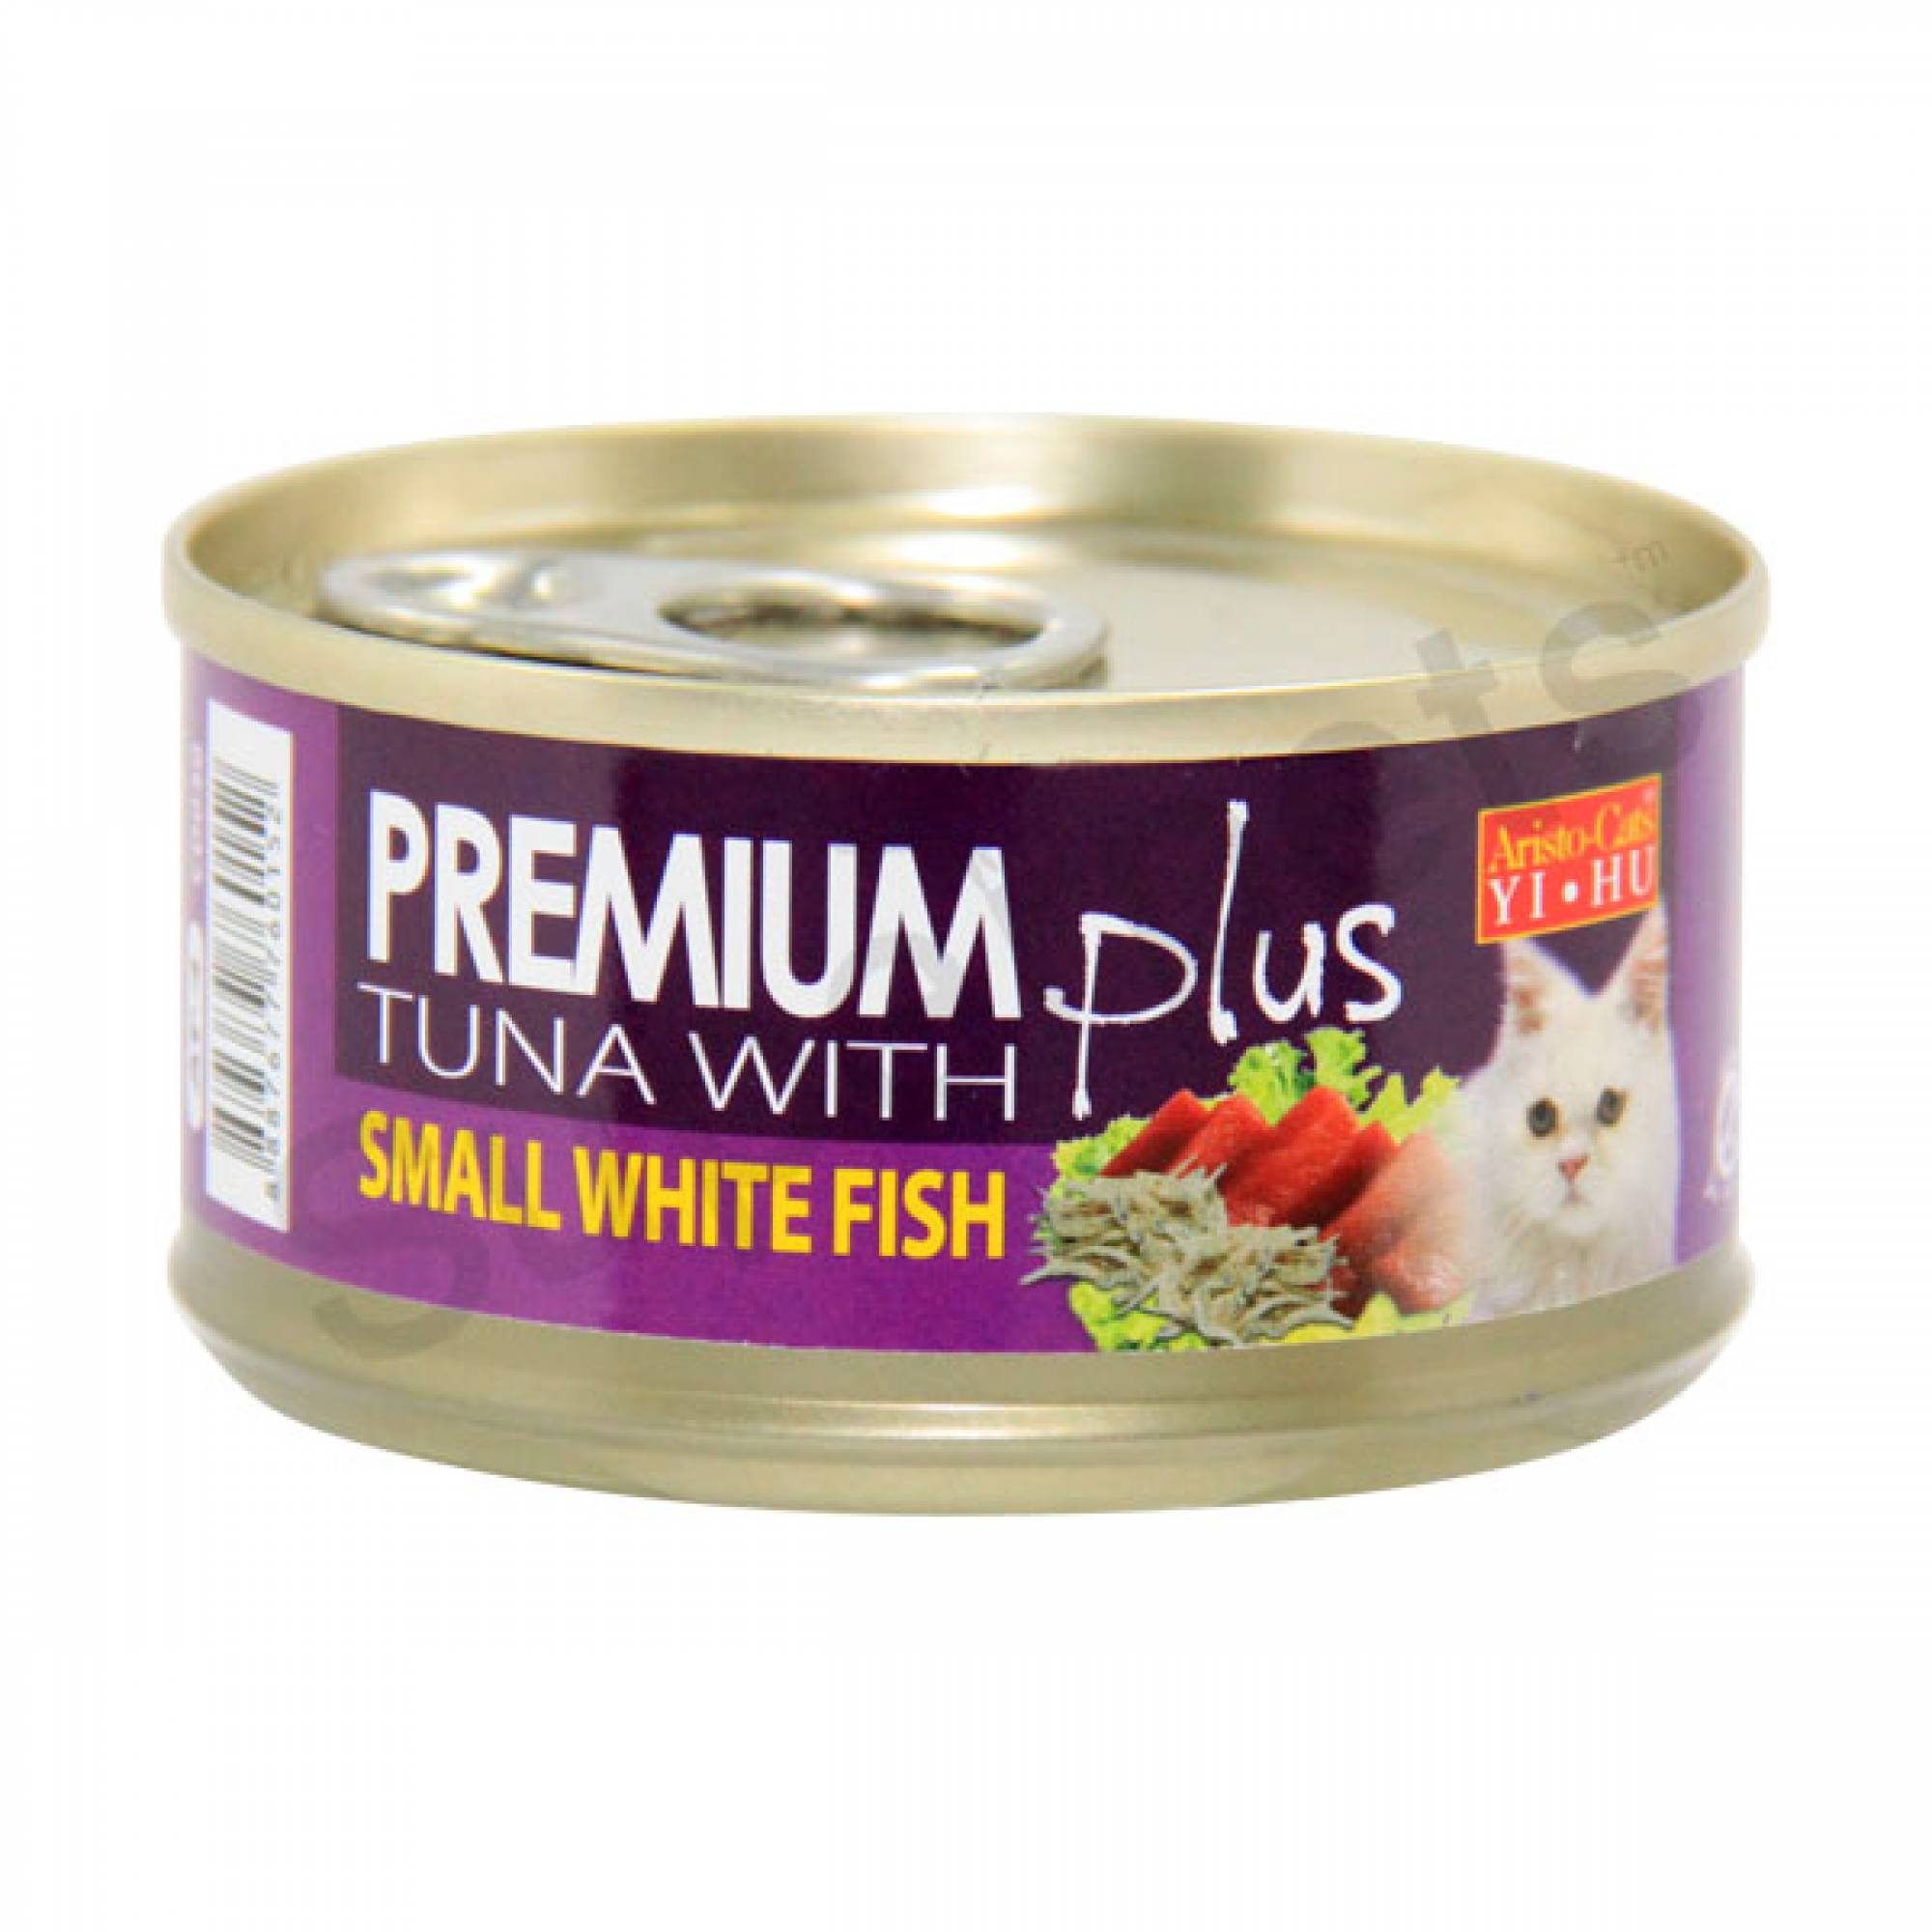 Aristo-Cats - Premium Plus - Tuna with Small White Fish 80g x 24pcs (1 carton)